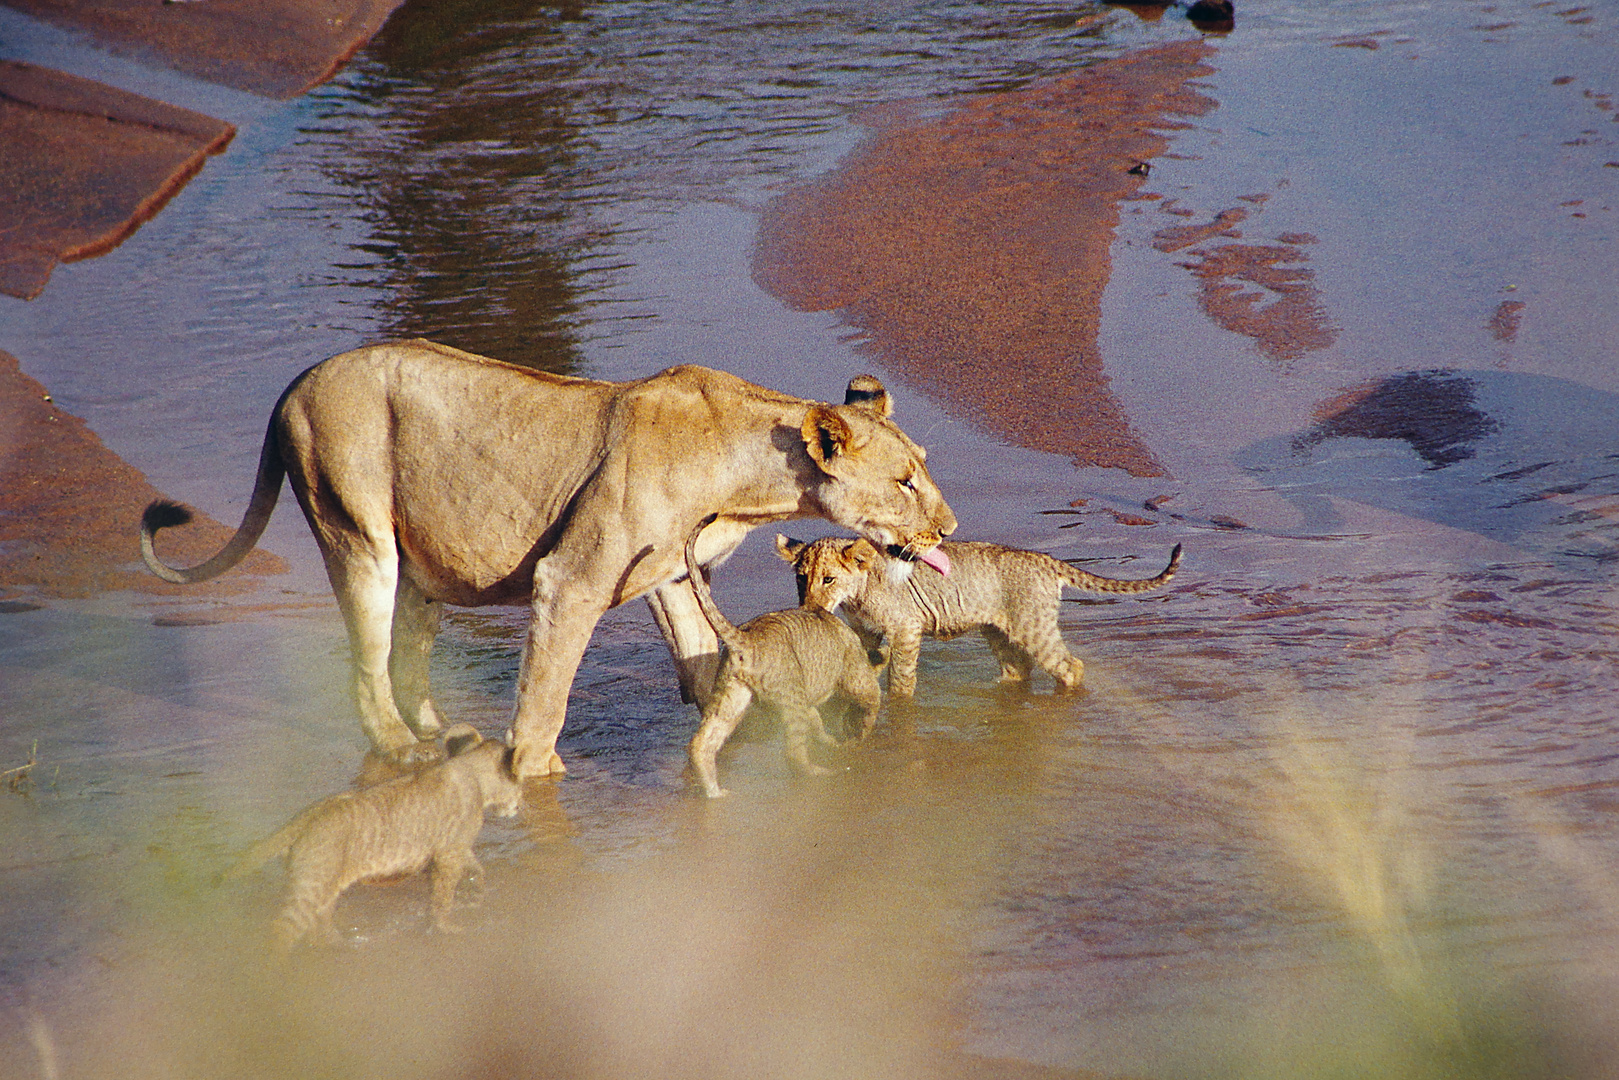 1999 Kenia, Samburu NR